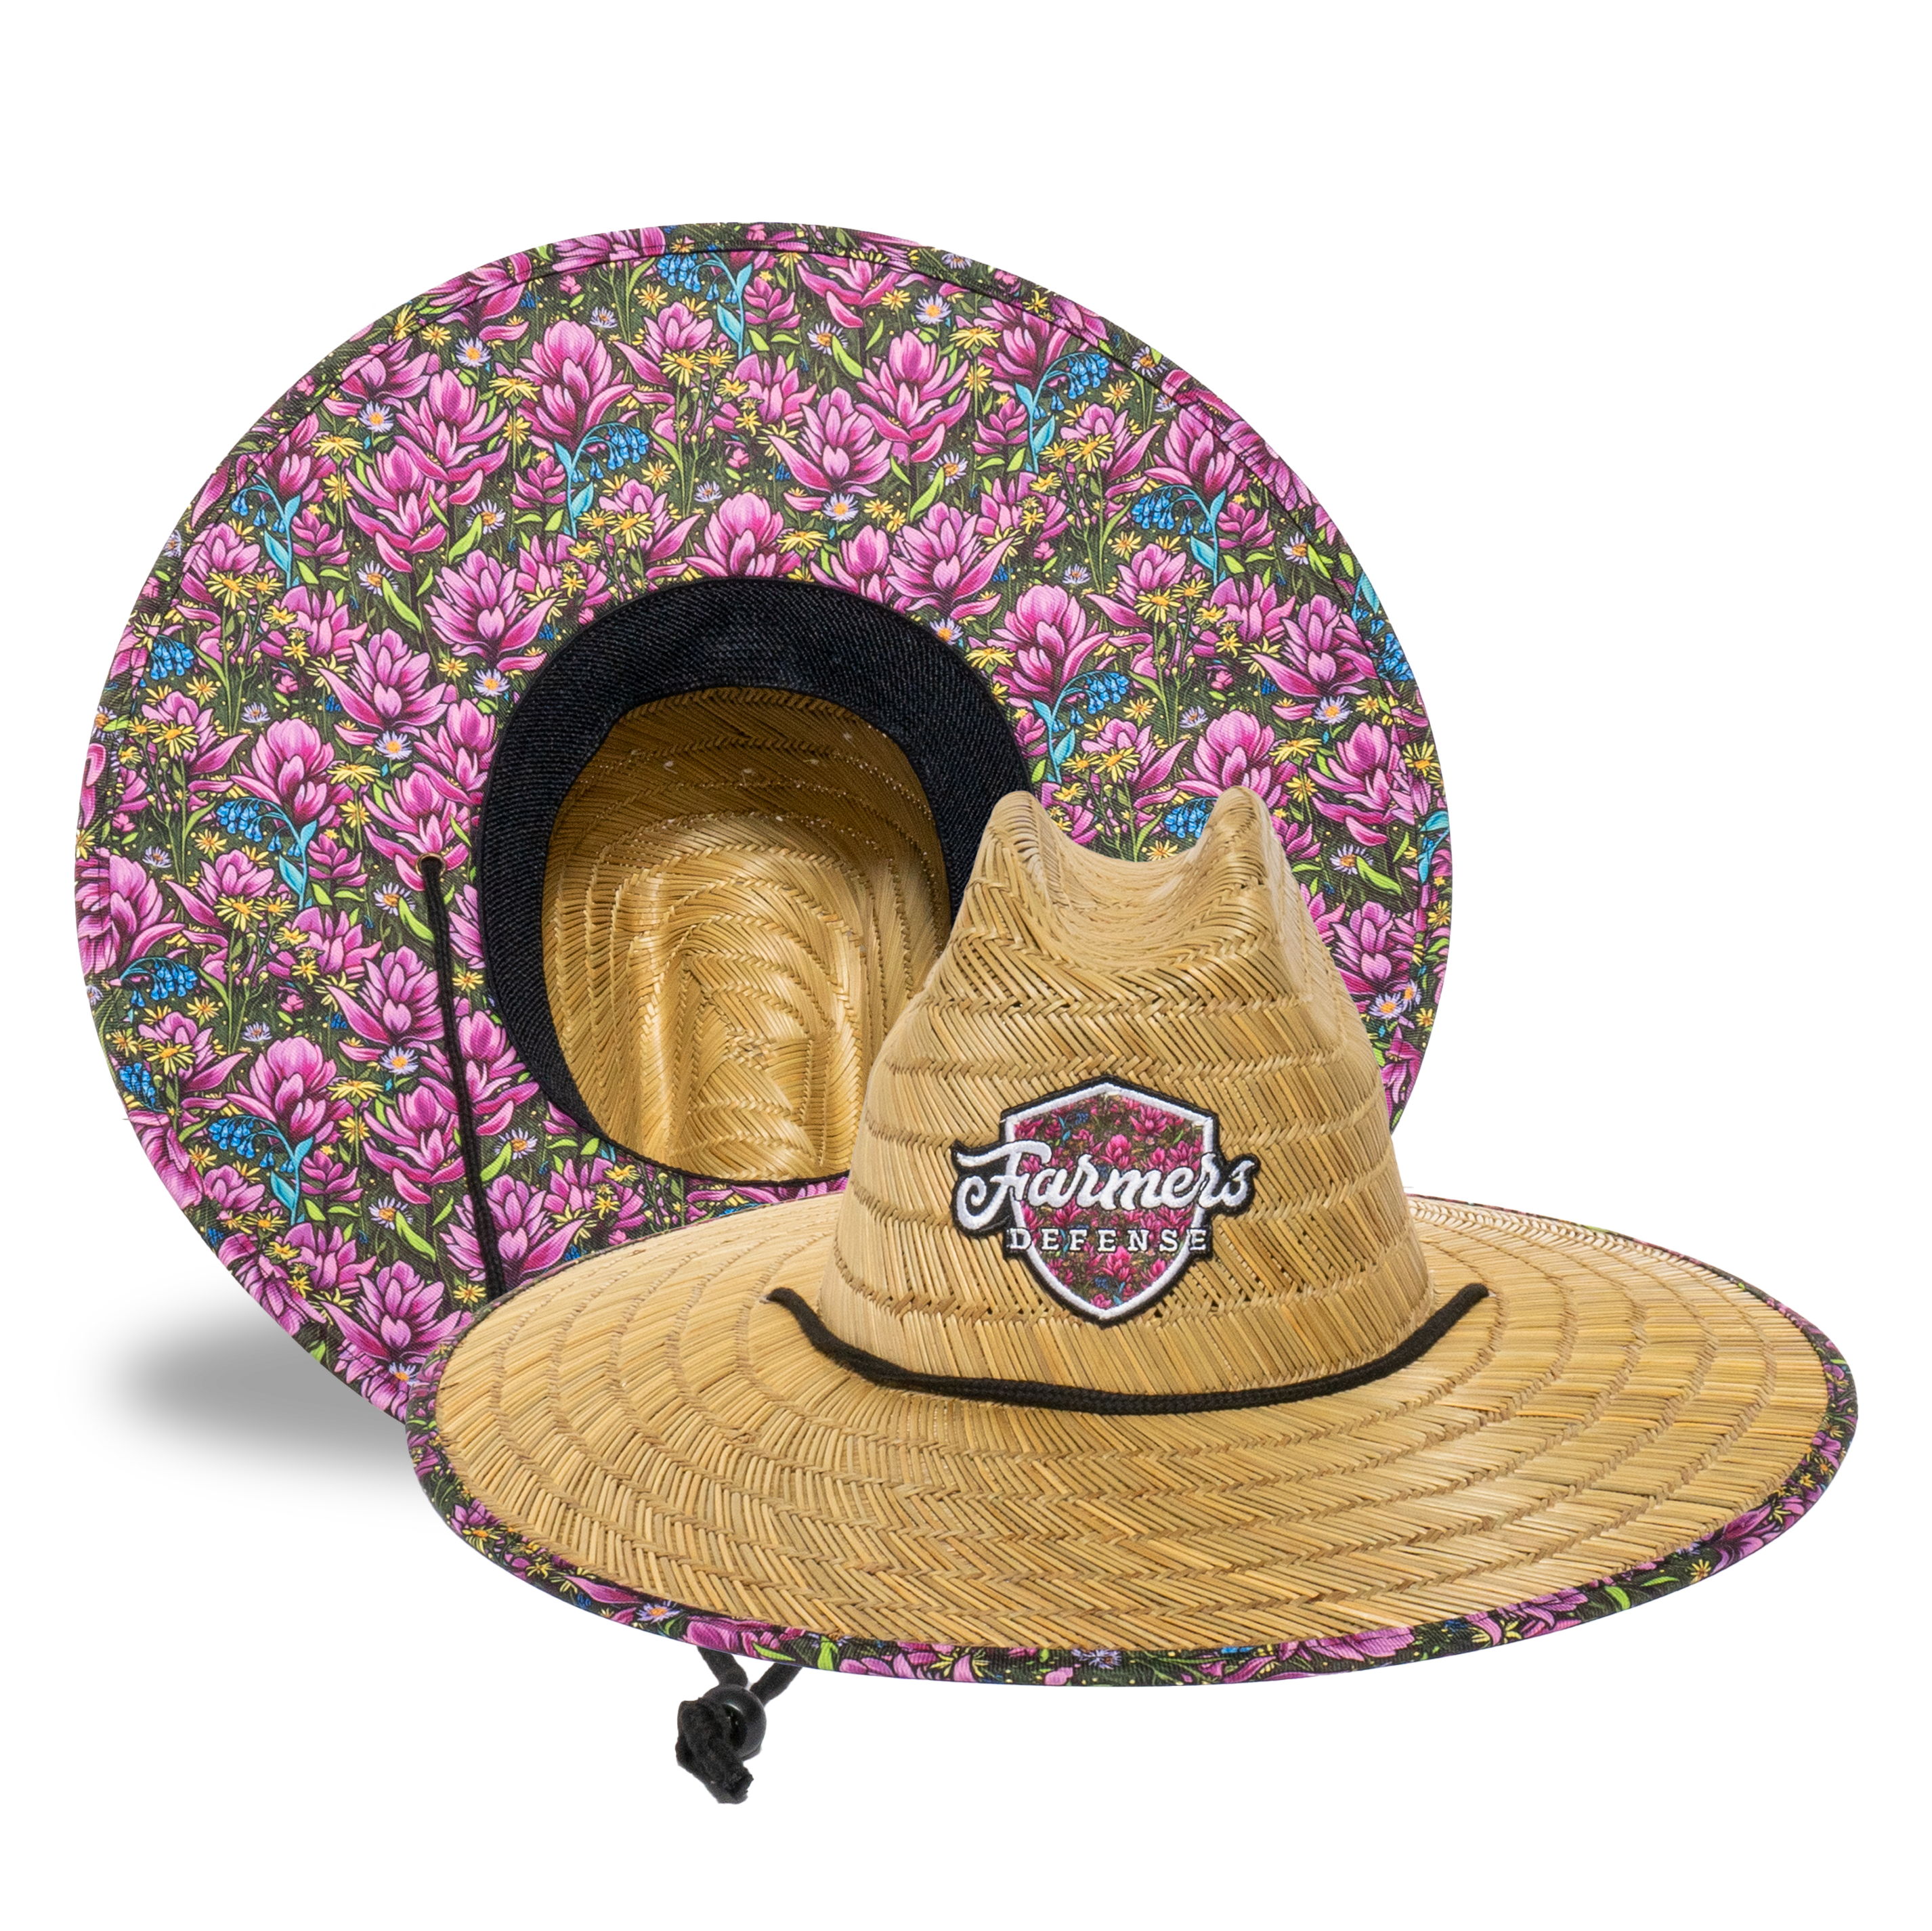 Farmers Defense Straw Hat - Rachel Pohl - Pink Flower